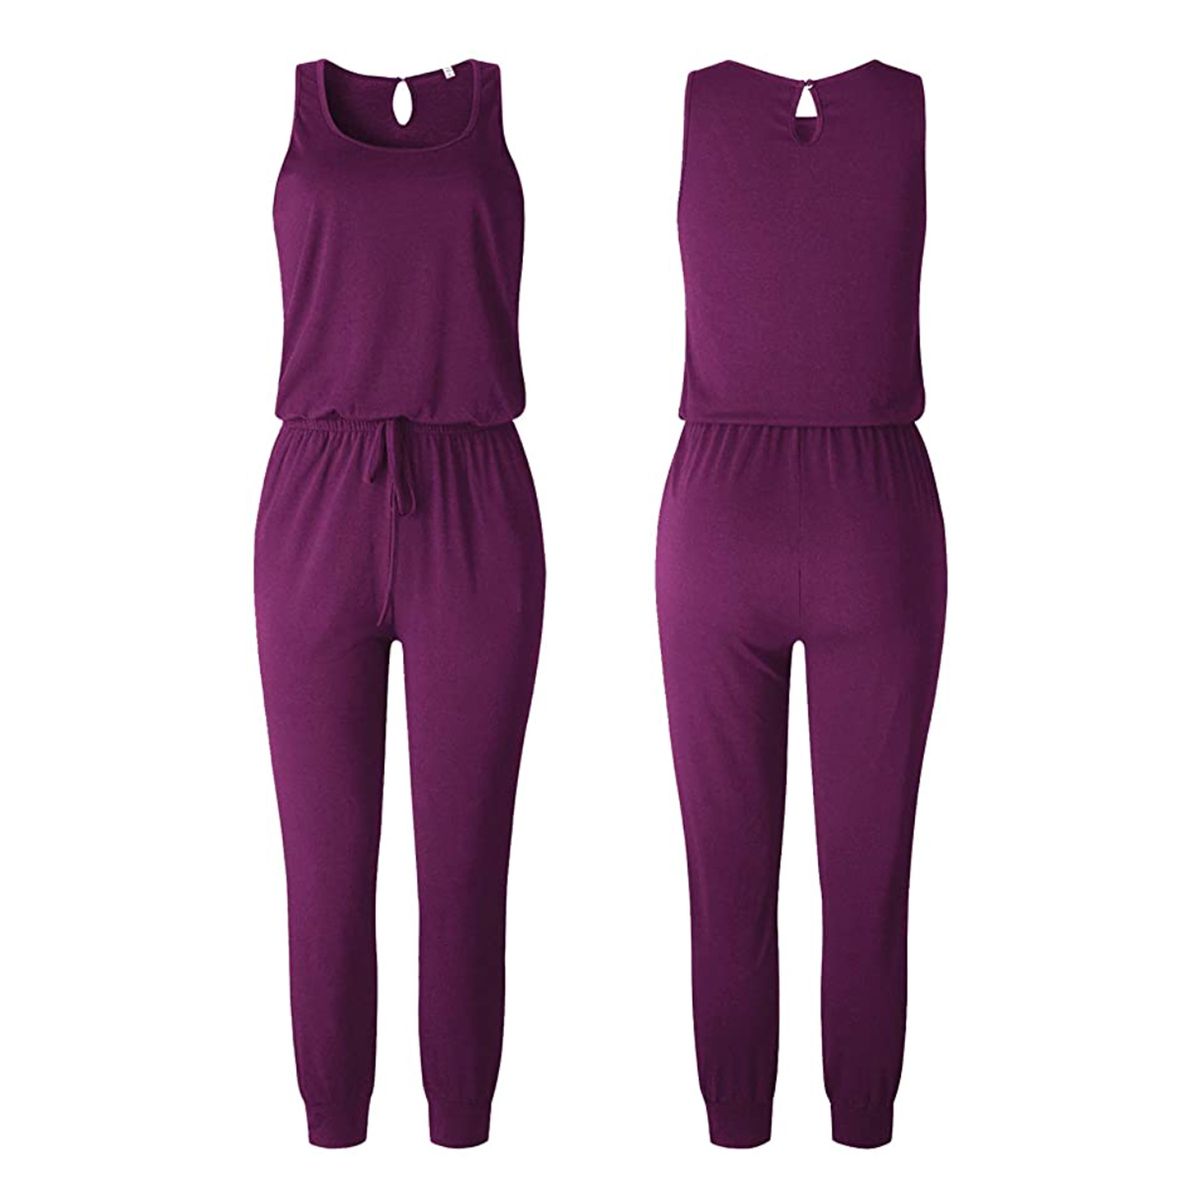 women's purple sleeveless jumsuit